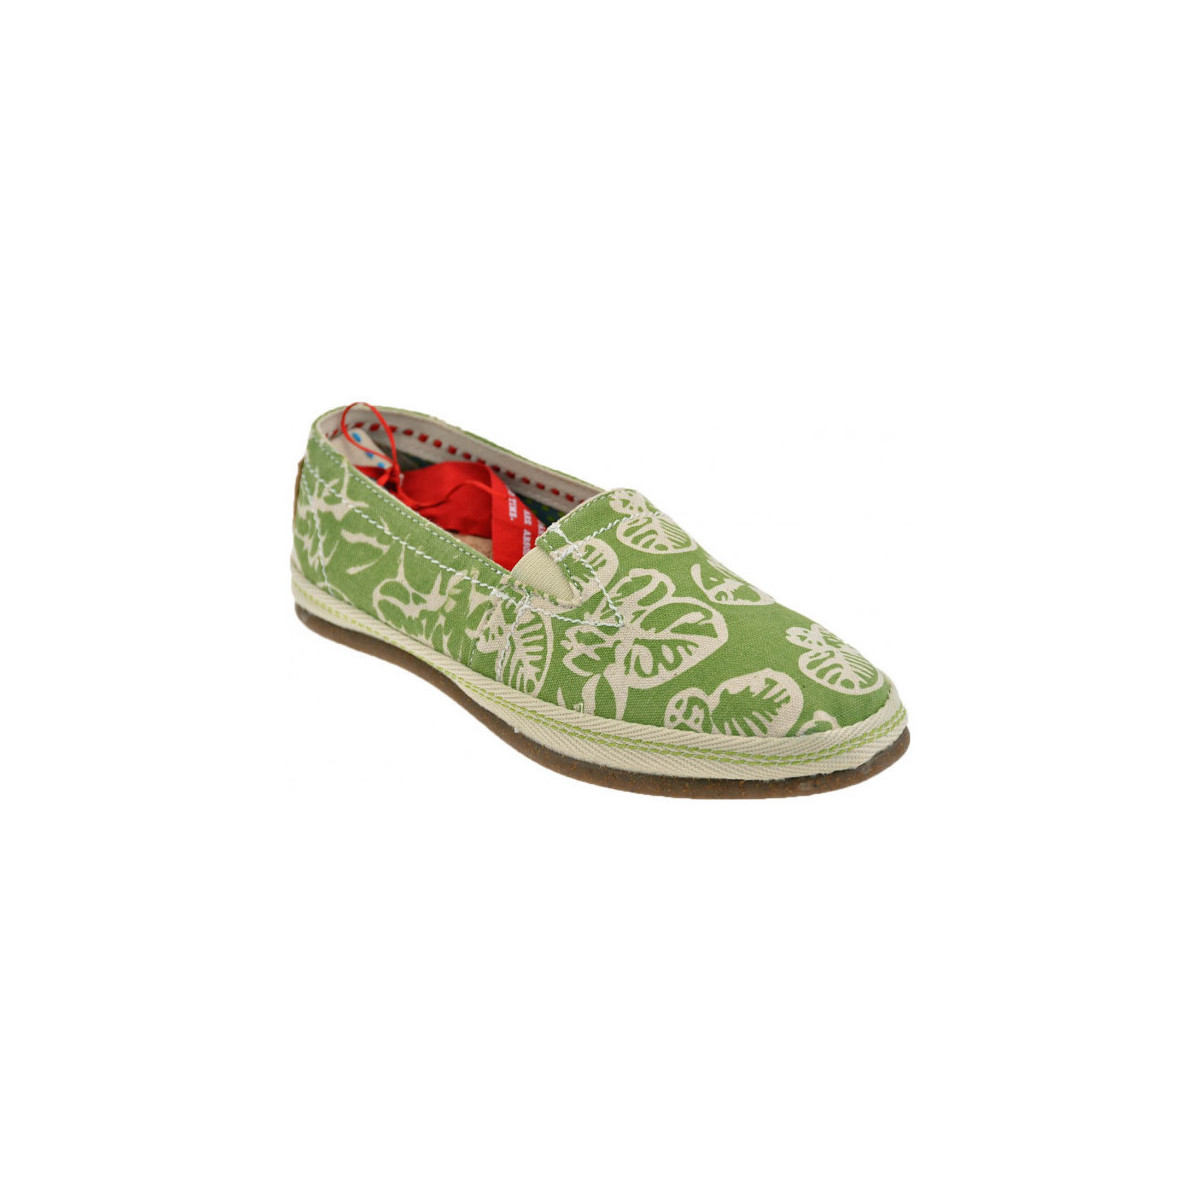 Scarpe Donna Sneakers O-joo L 510  Slip  On Verde